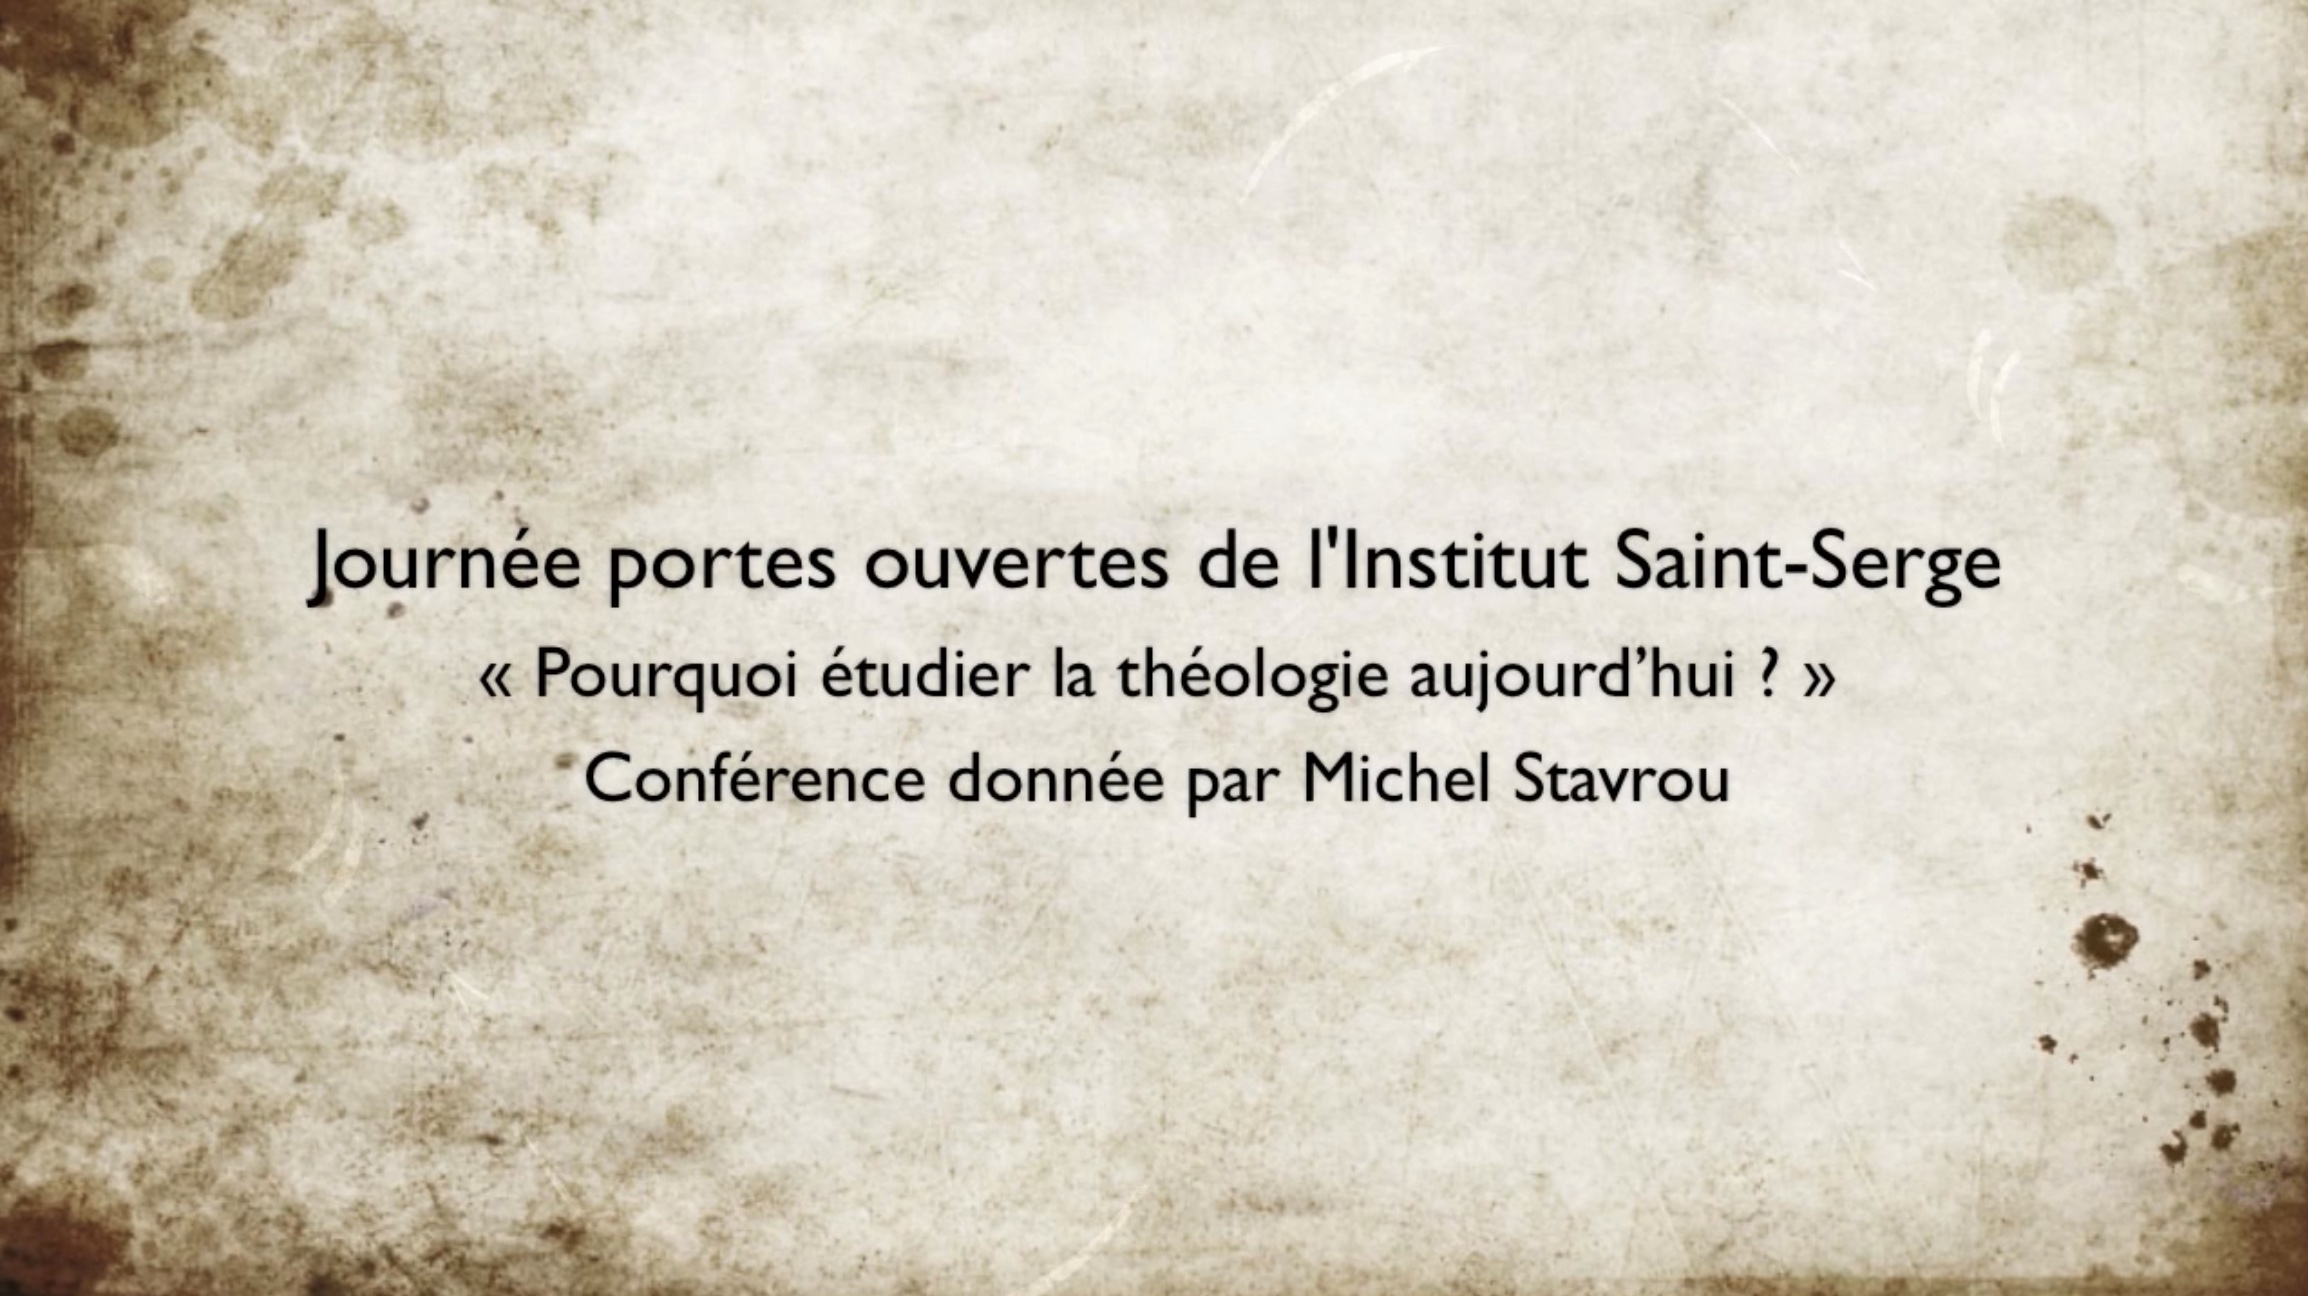 « Pourquoi étudier la théologie aujourd’hui ? », une conférence de Michel Stavrou